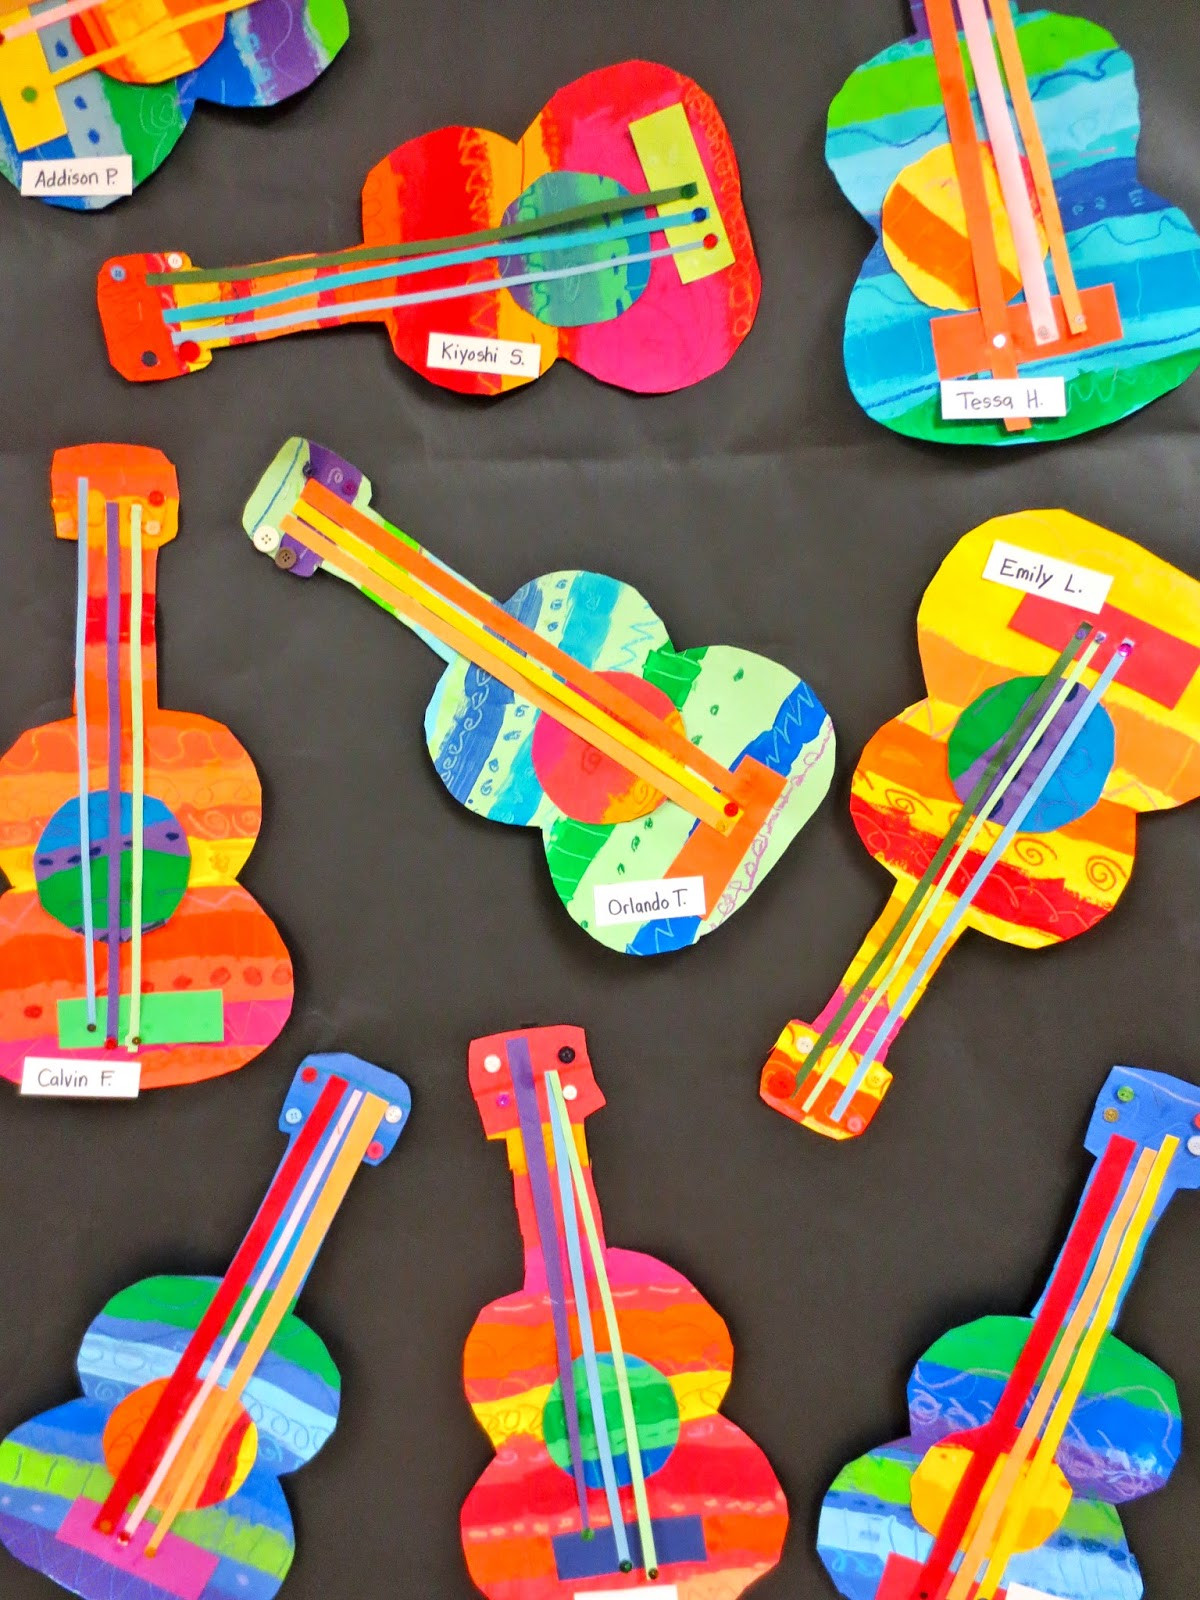 Best ideas about Art Craft For Kids
. Save or Pin Zilker Elementary Art Class Zilker s 2014 School wide Now.